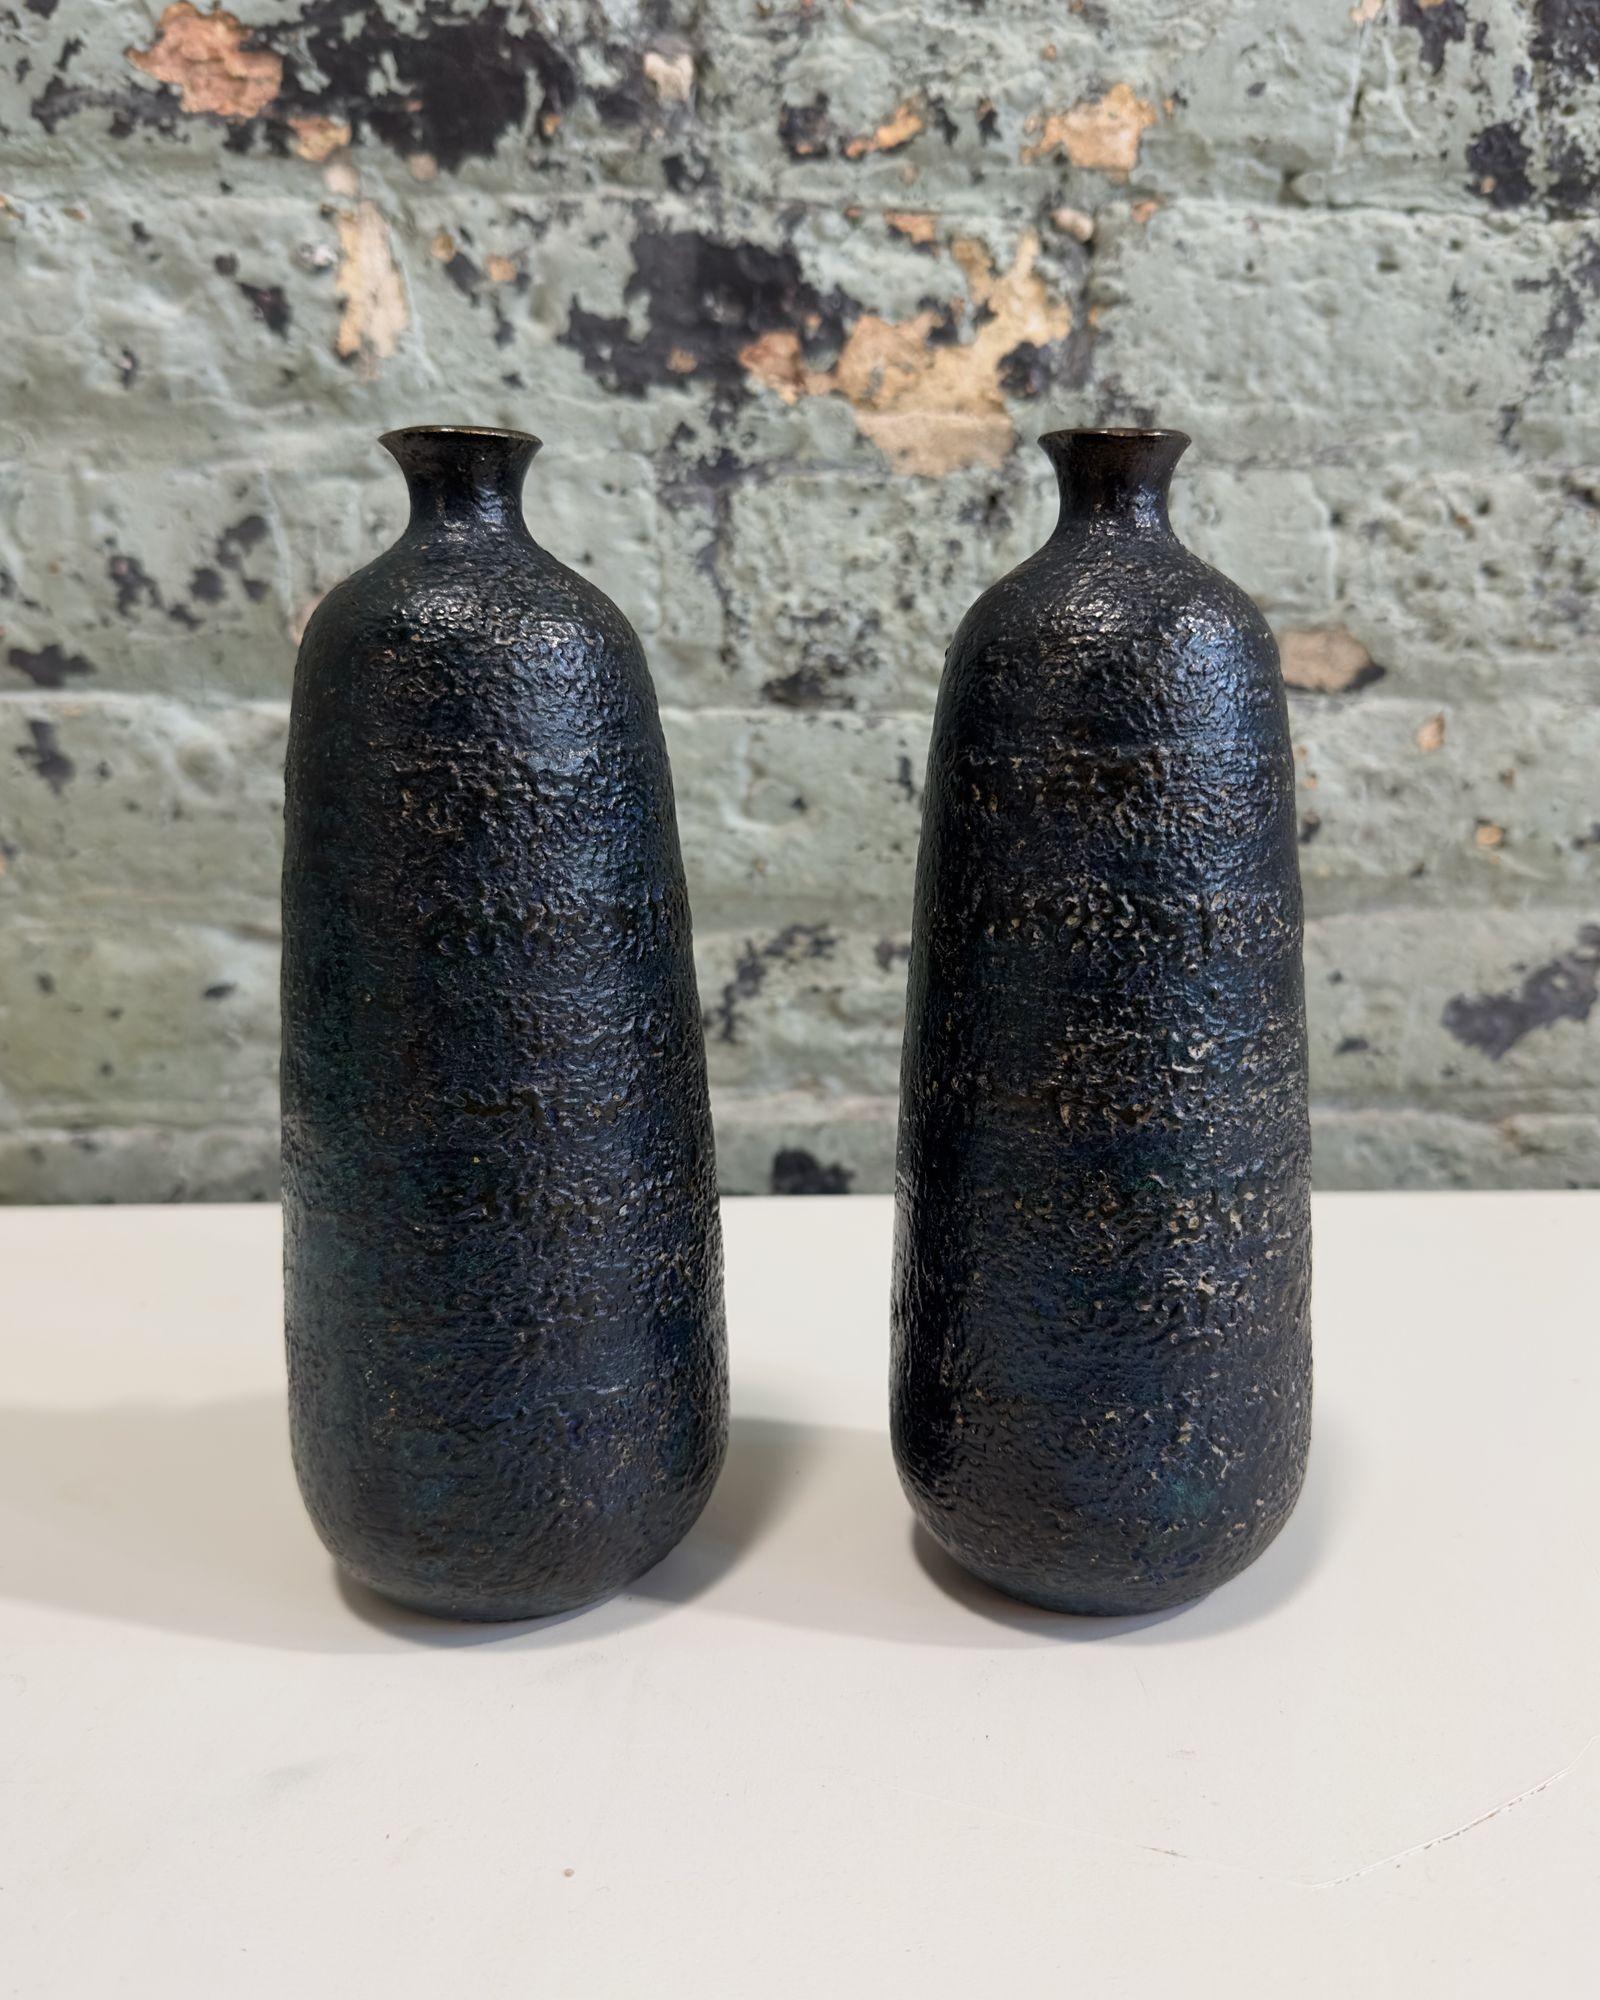 Japanese Craftsman Bronze Vases Black Volcanic Patinated Enamel, Japan 1930's For Sale 2